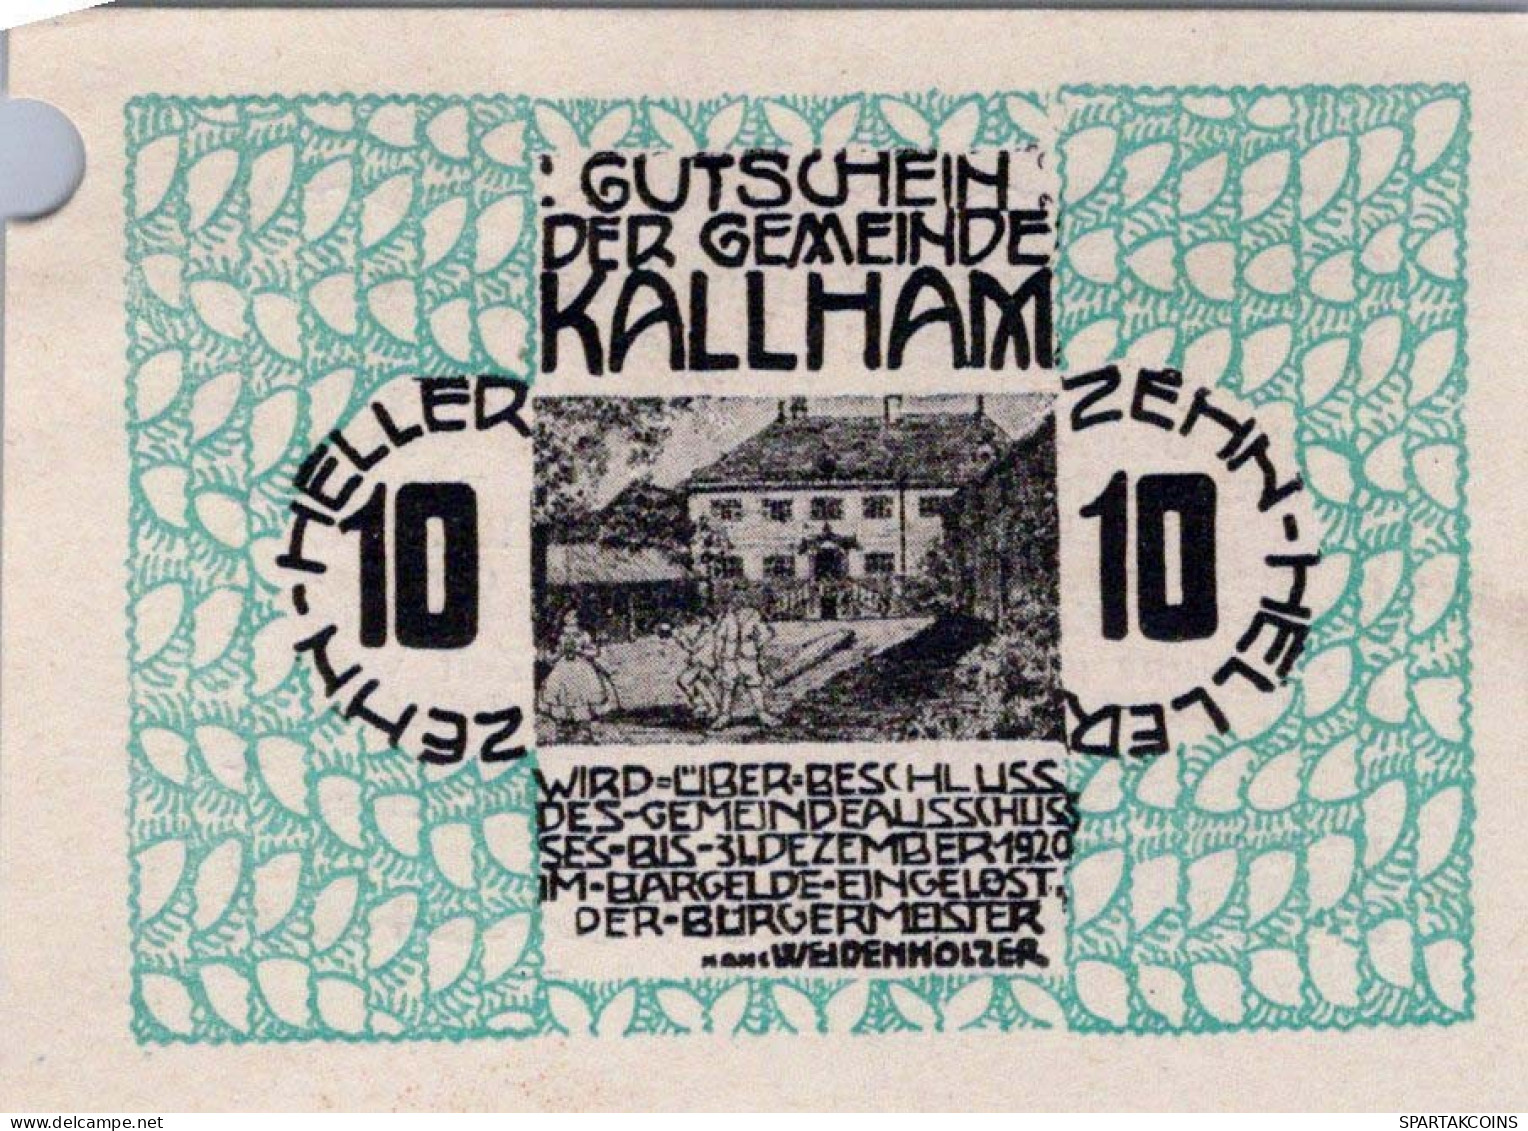 10 HELLER 1920 Stadt KALLHAM Oberösterreich Österreich Notgeld Banknote #PD637 - [11] Lokale Uitgaven